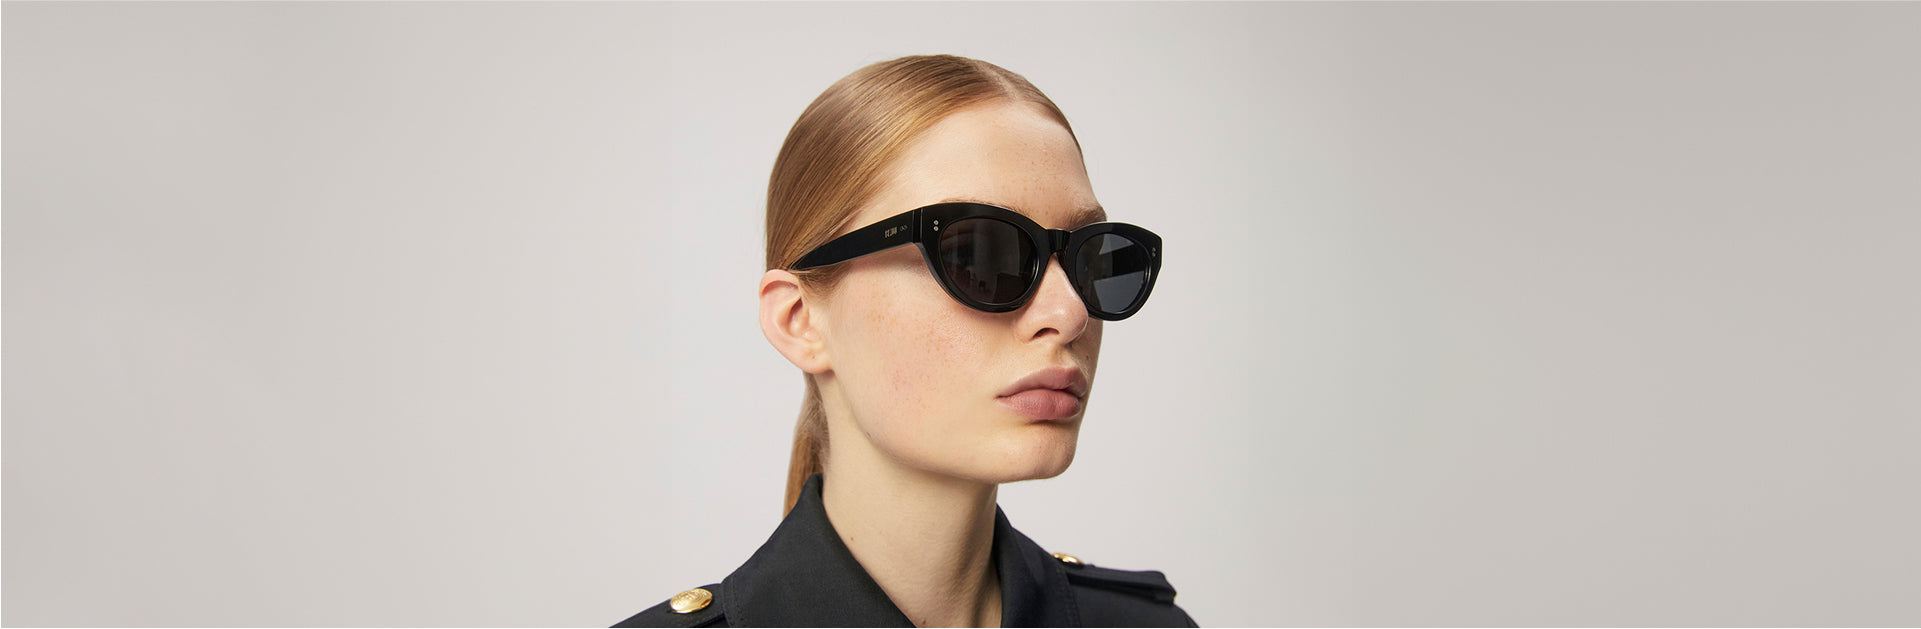 Okulary przeciwsłoneczne, które nie wychodzą z mody – poznaj te modele!